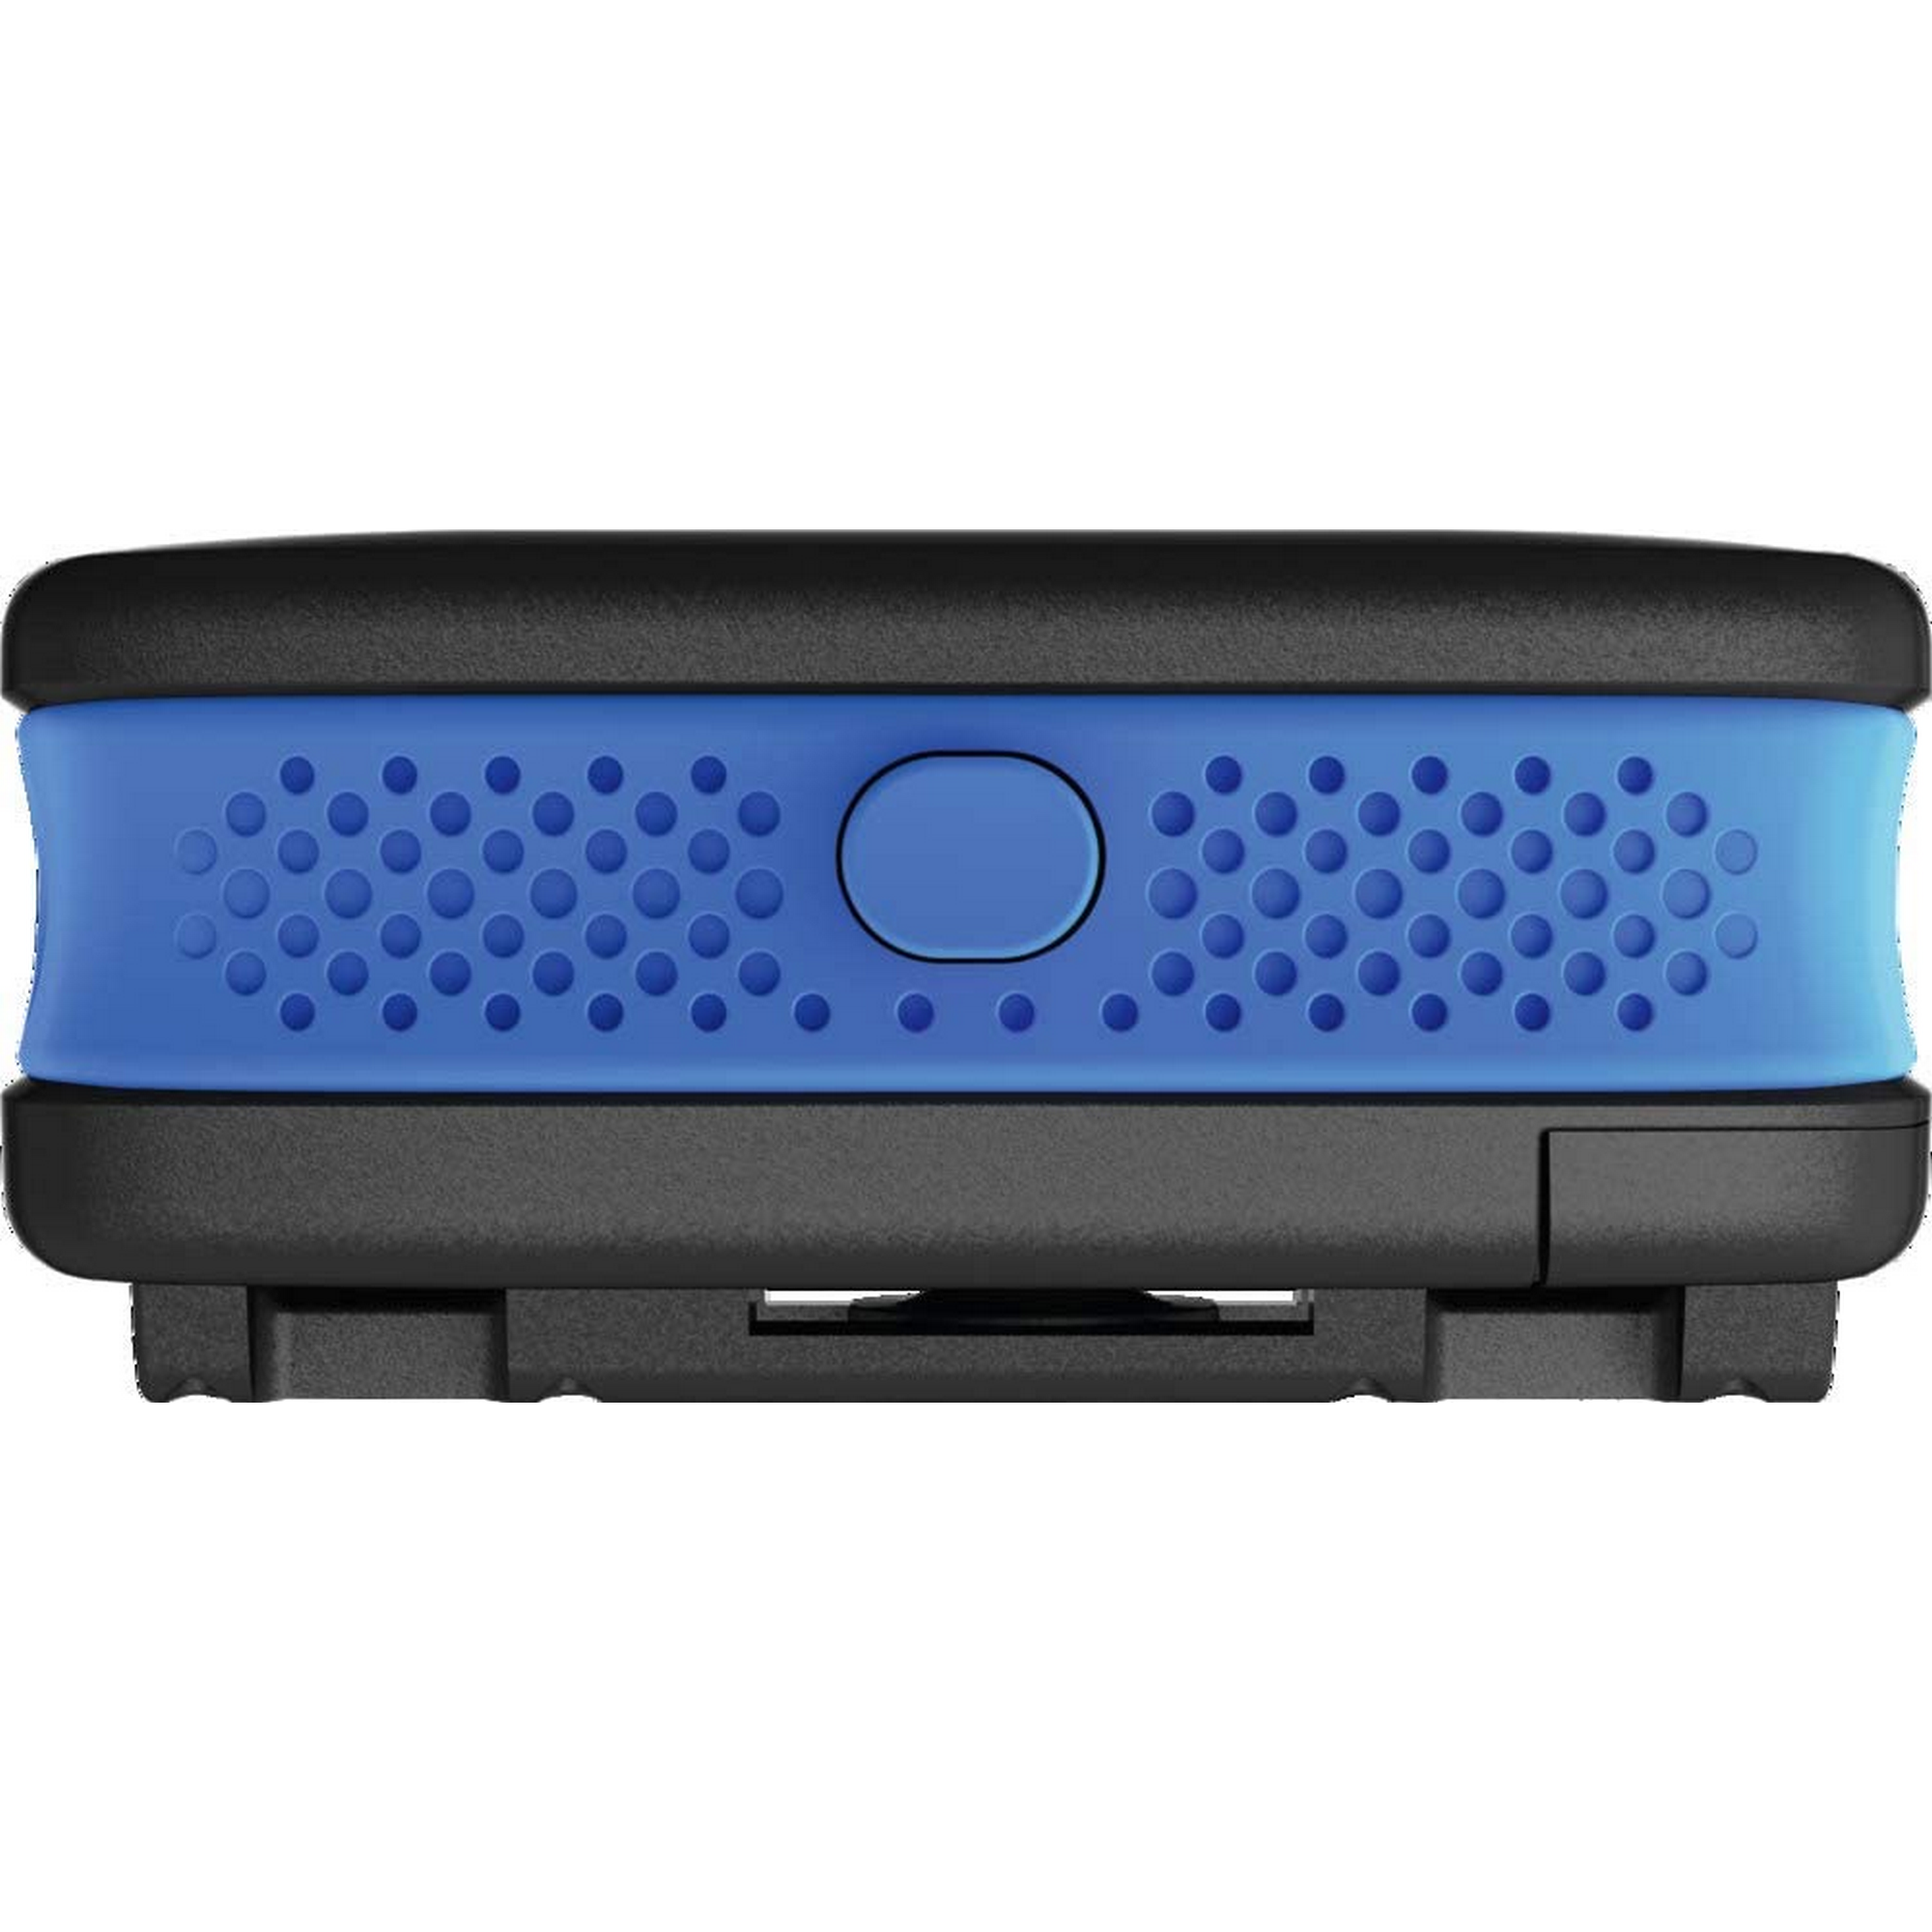 Alarmbox blau 8,5 x 5,9 x 3,9 cm + product picture